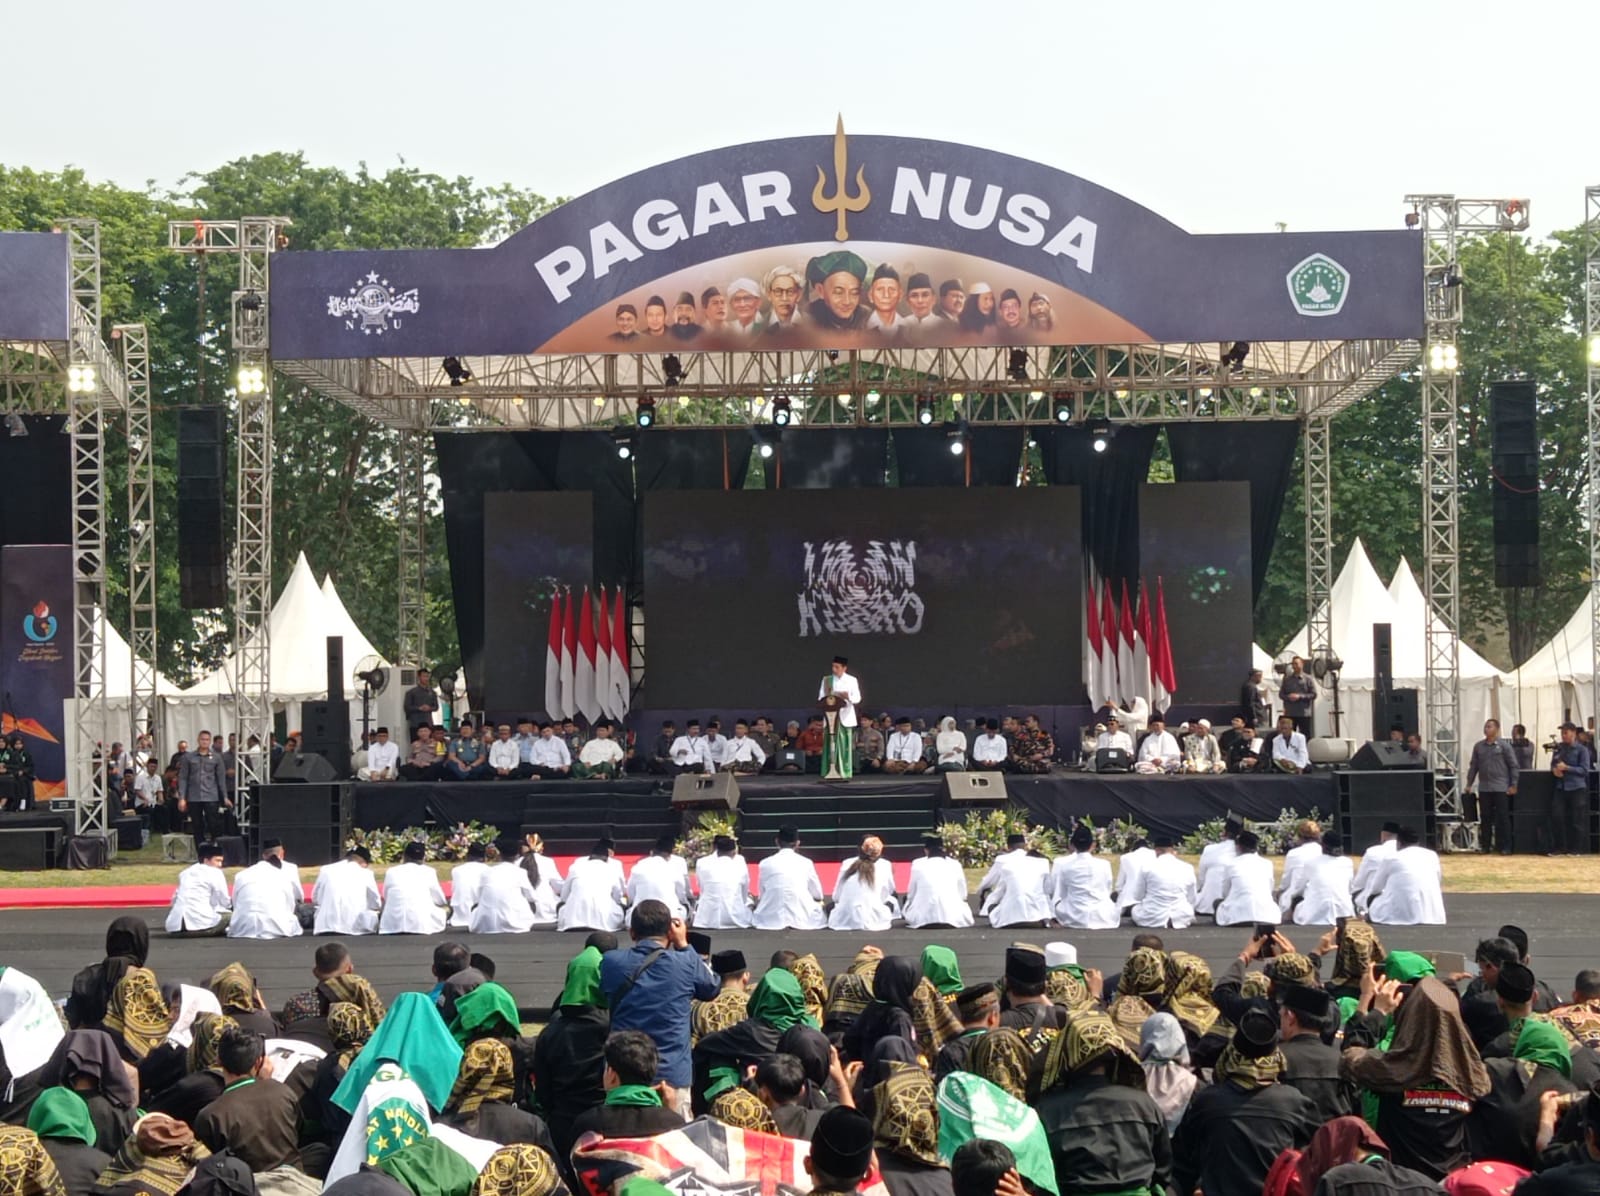 Joko Widodo Presiden saat menberi sambutan dalam ijazah kubro dan pengukuhan pimpinan Pagar Nusa masa khidmat periode 2023-2028 yang berlangsung di Lapangan Jala Krida Mandala, Morokrembangan, Krembangan, Surabaya, pada Minggu (22/10/2023). Foto: Risky suarasurabaya.net